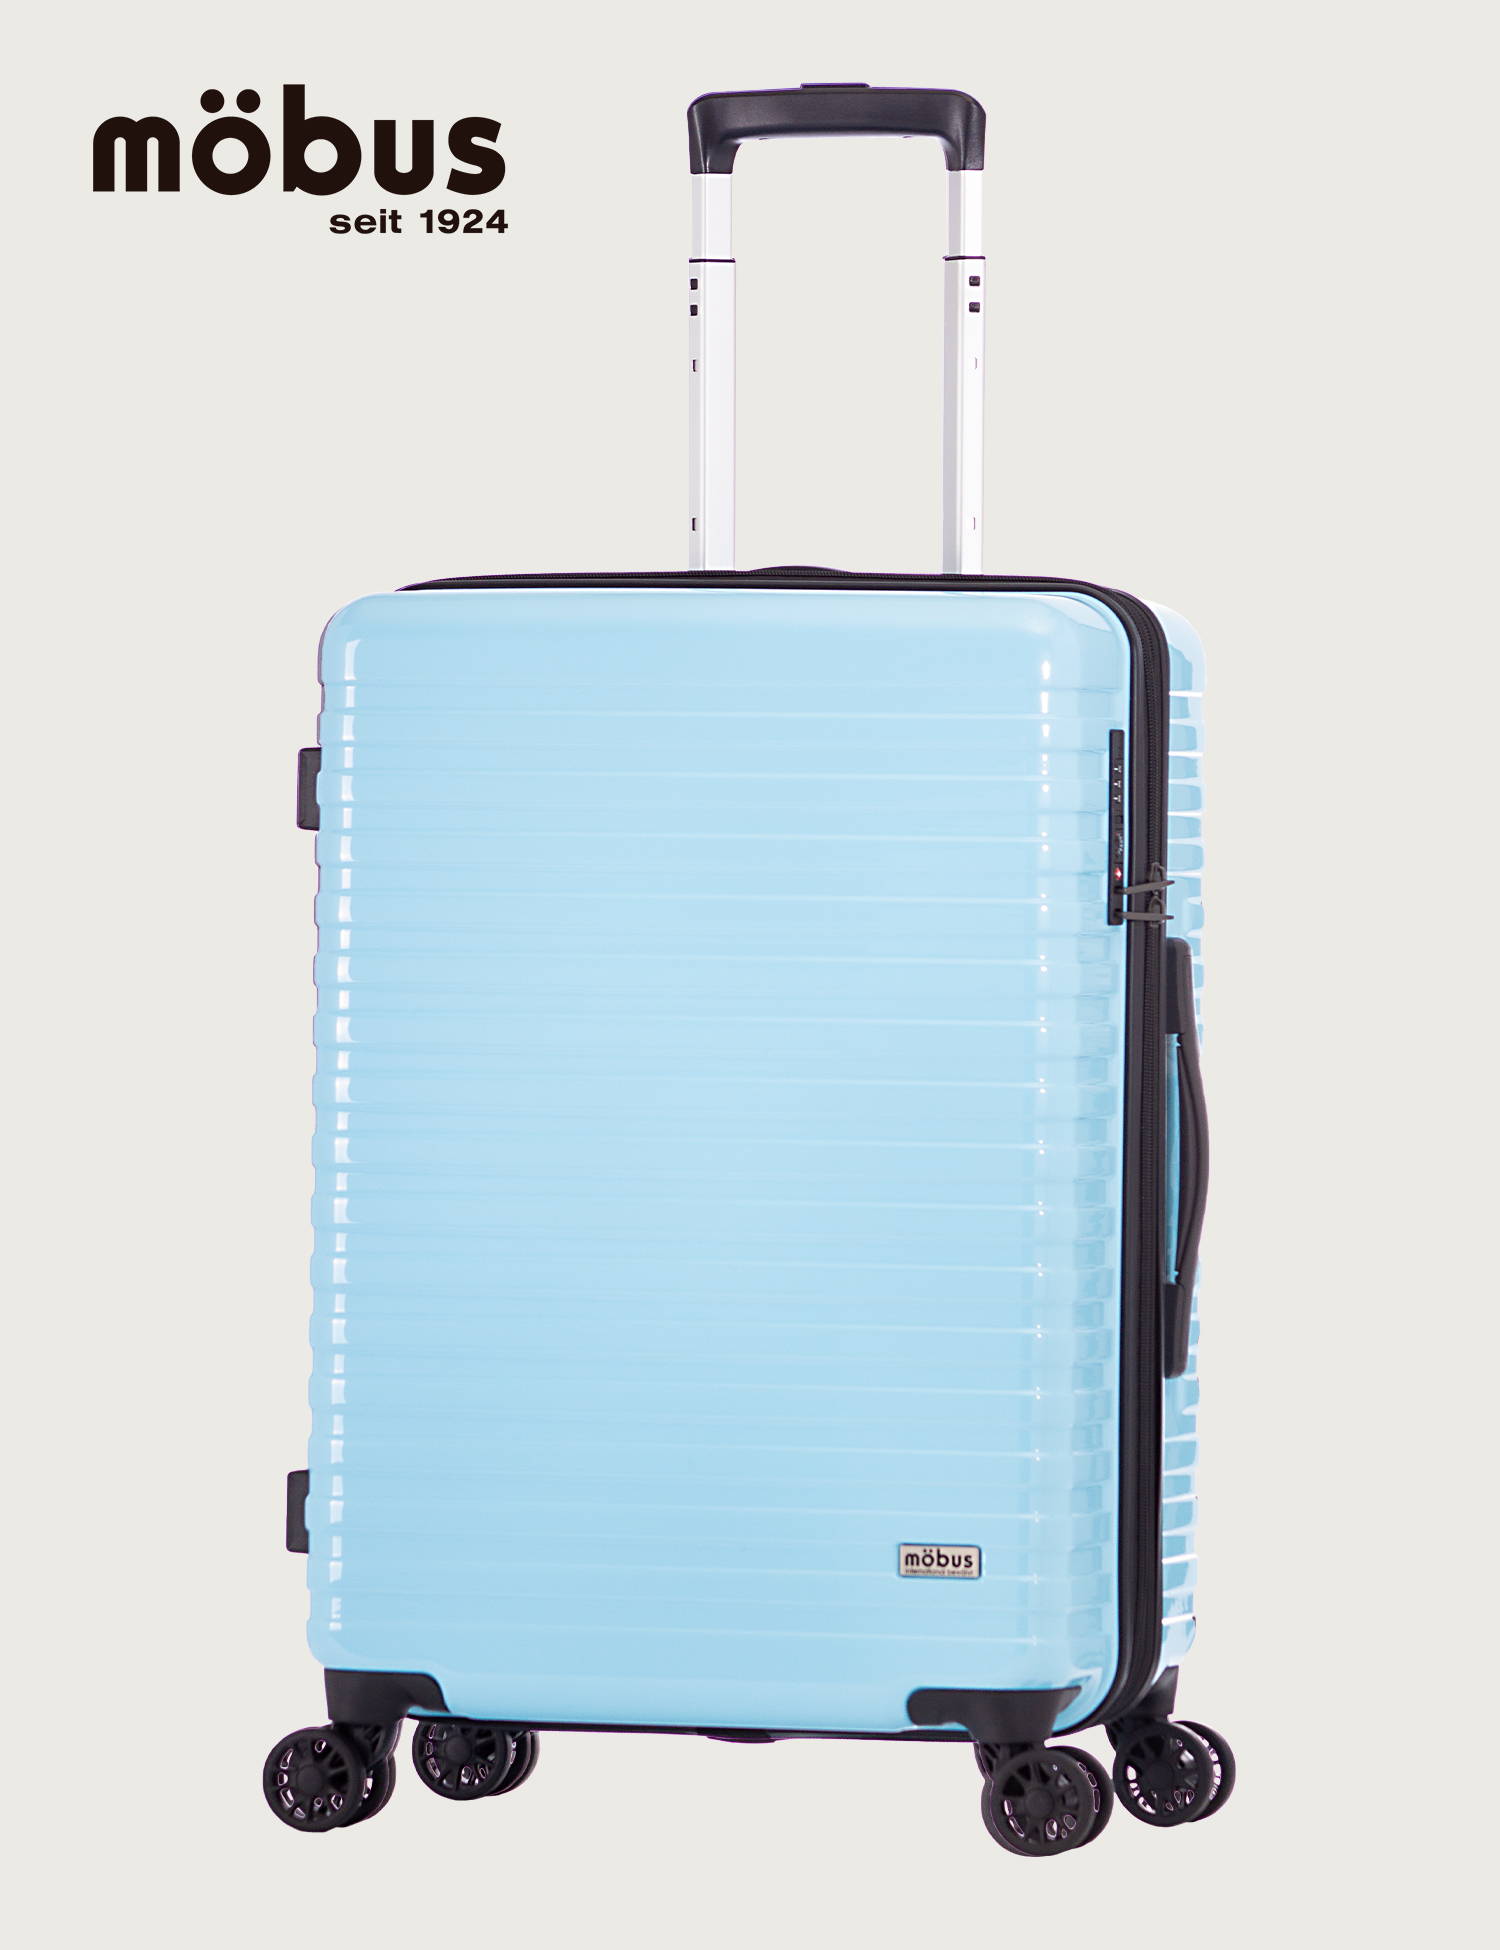 ハードキャリー | アジア・ラゲージ 公式サイト | Asia Luggage